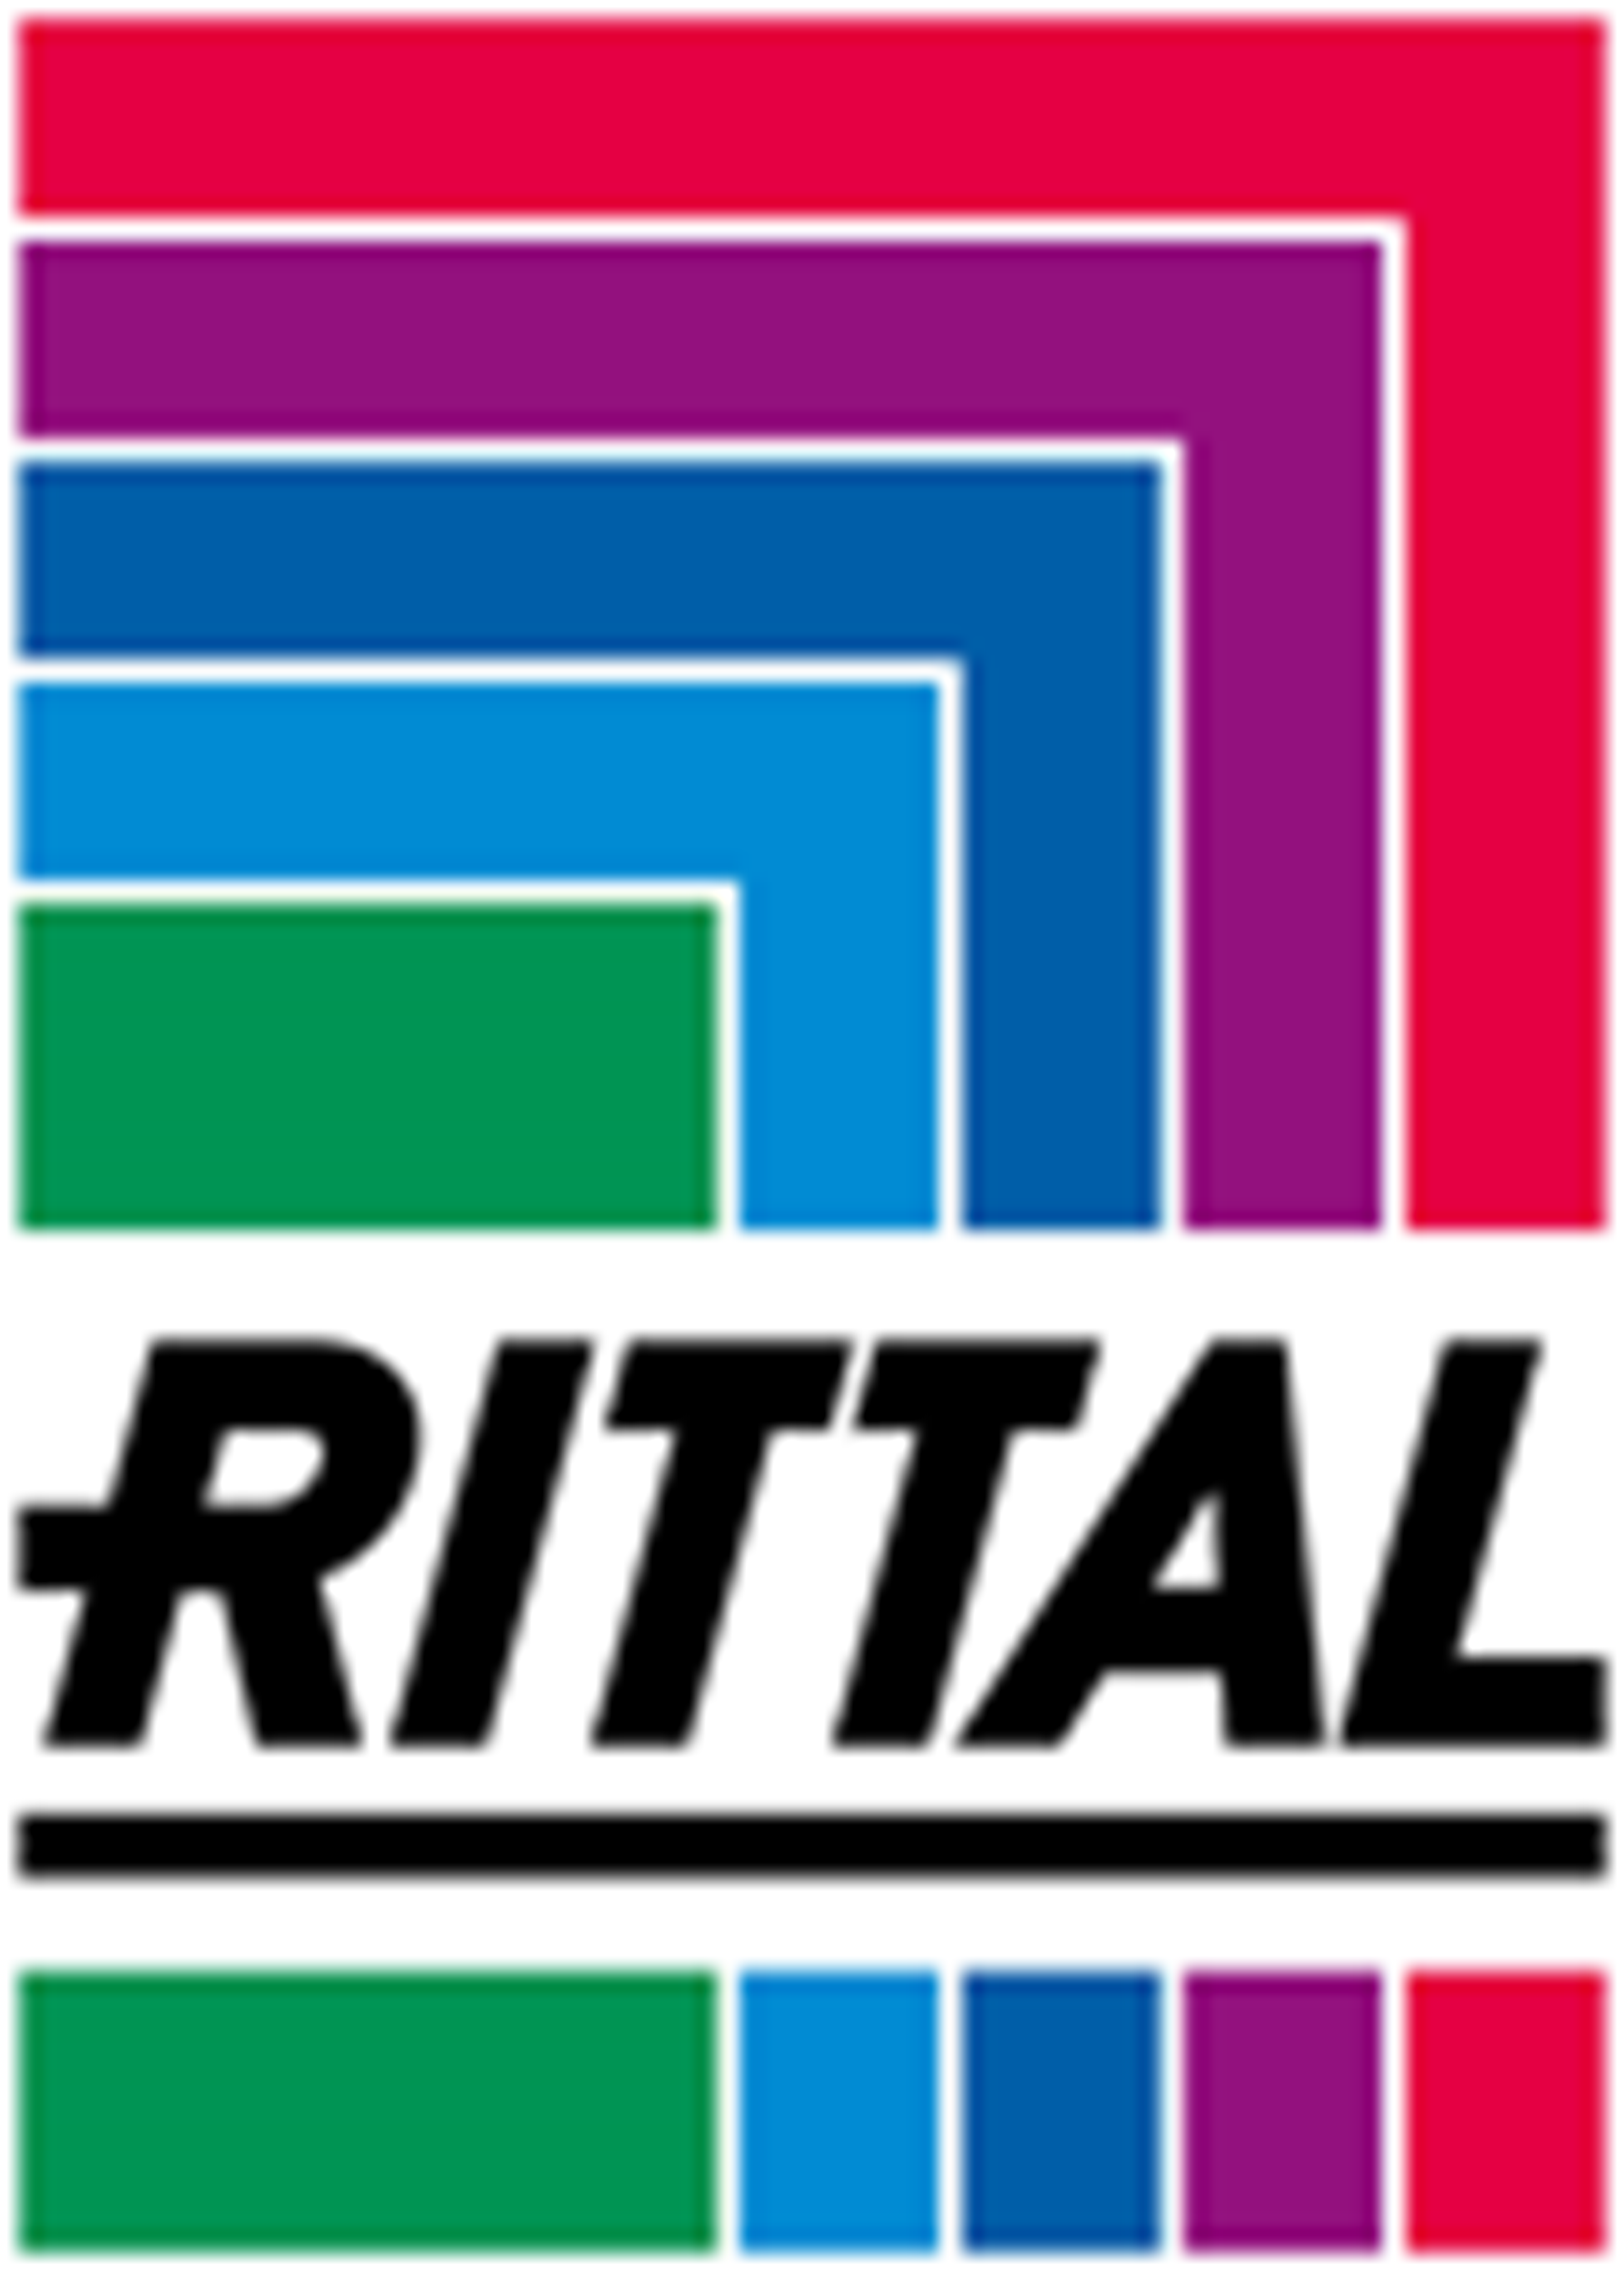 Rittal GmbH und Co. KG